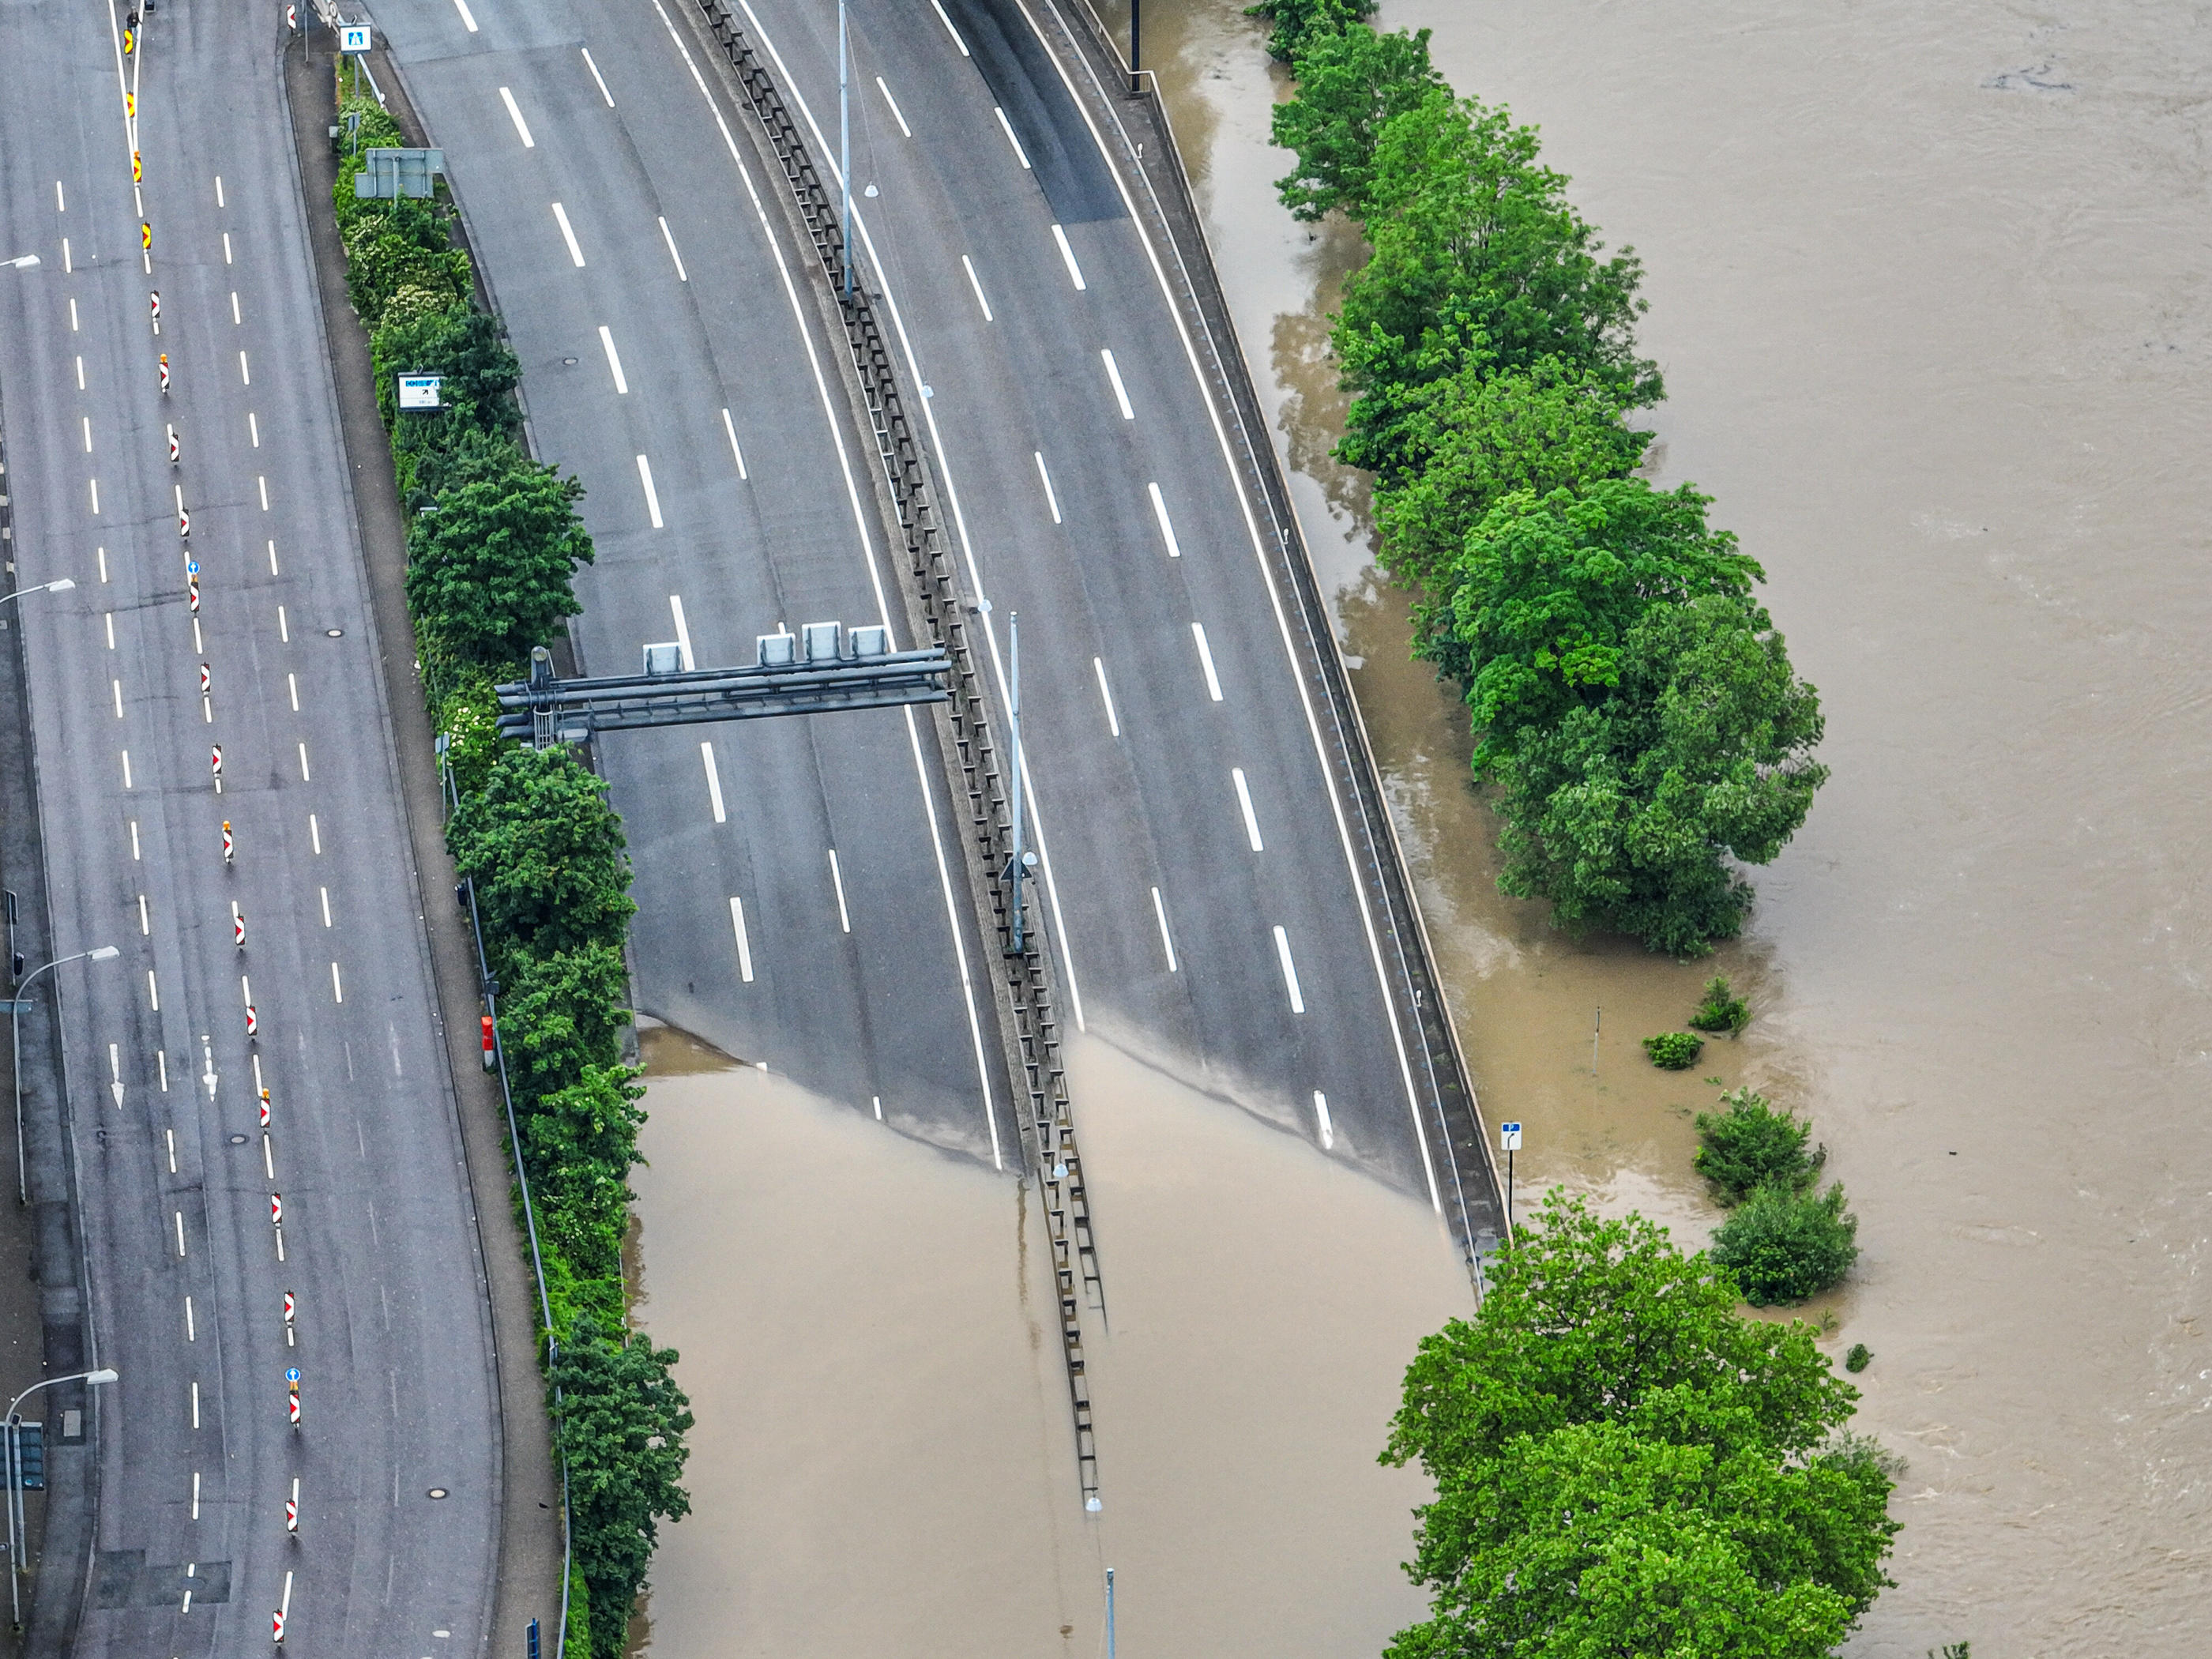 Sarrebruck (Allemagne), samedi. L'accès à cette route est impossible à cause des inondations. Icon sport/DPA/Laszlo Pinter/dpa